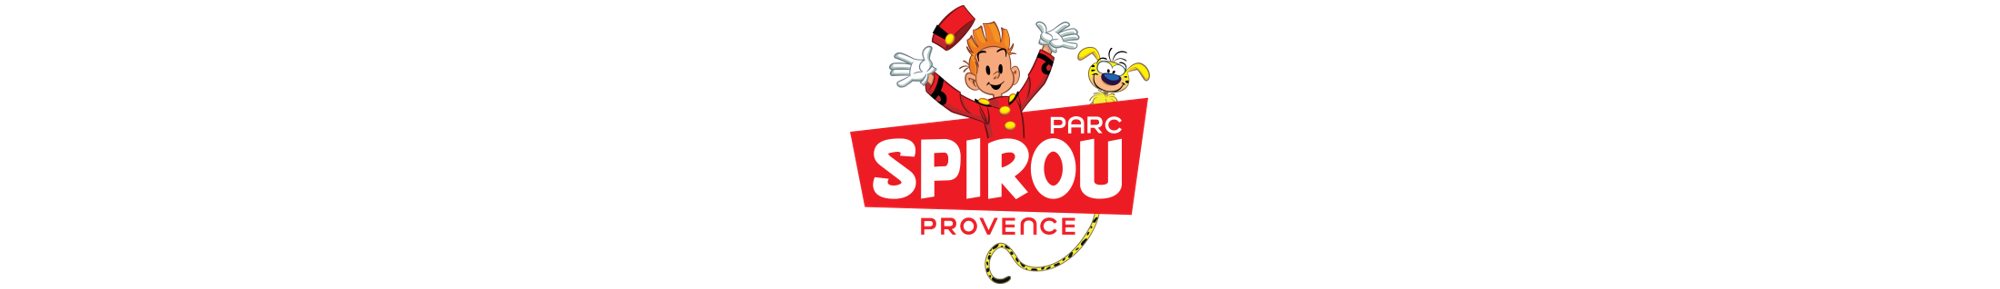 PARC SPIROU logo